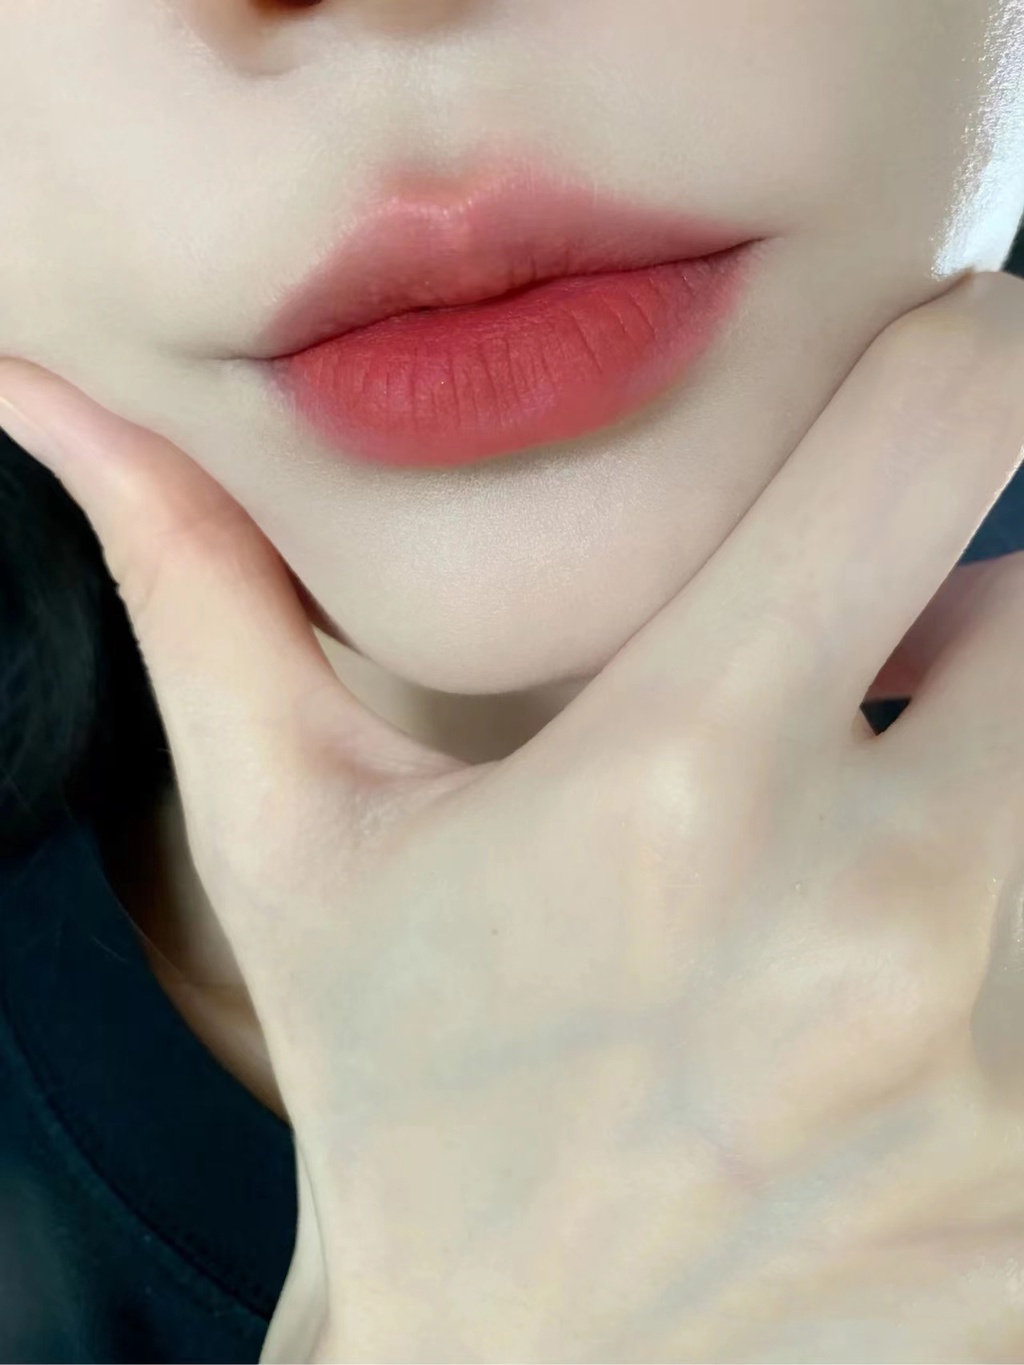 ภาพประกอบคำอธิบาย Daimanpu ลิปสติก ลิปทินท์ เนื้อแมตต์กํามะหยี่ สีแดง สีชมพู ธรรมชาติ กันน้ํา ติดทนนาน เครื่องสําอาง สไตล์เกาหลี ลิปแมท ลิปซอง ลิปจีน ลิปจิ๋ว lipstick